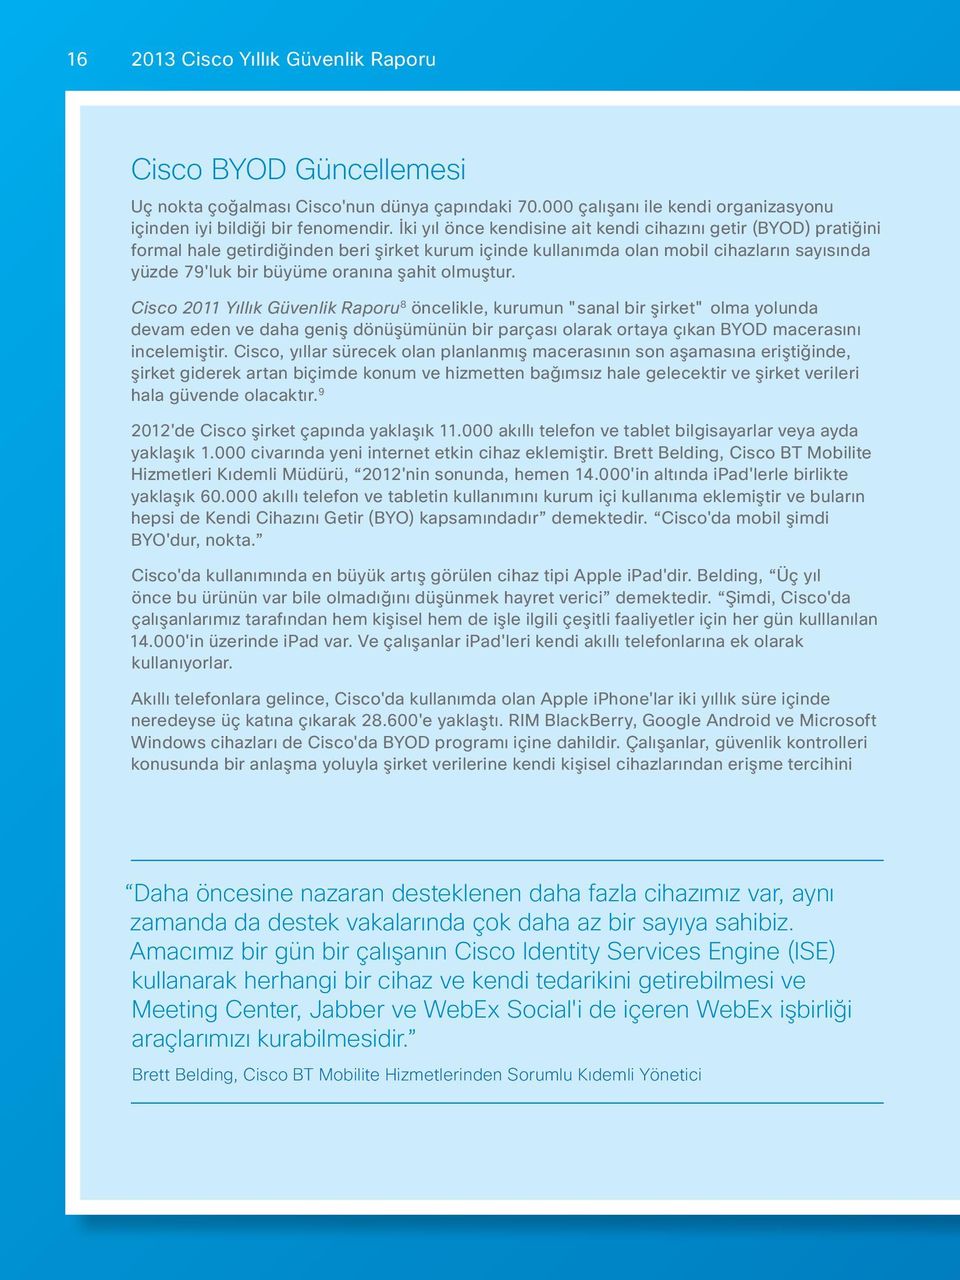 olmuştur. Cisco 2011 Yıllık Güvenlik Raporu 8 öncelikle, kurumun "sanal bir şirket" olma yolunda devam eden ve daha geniş dönüşümünün bir parçası olarak ortaya çıkan BYOD macerasını incelemiştir.